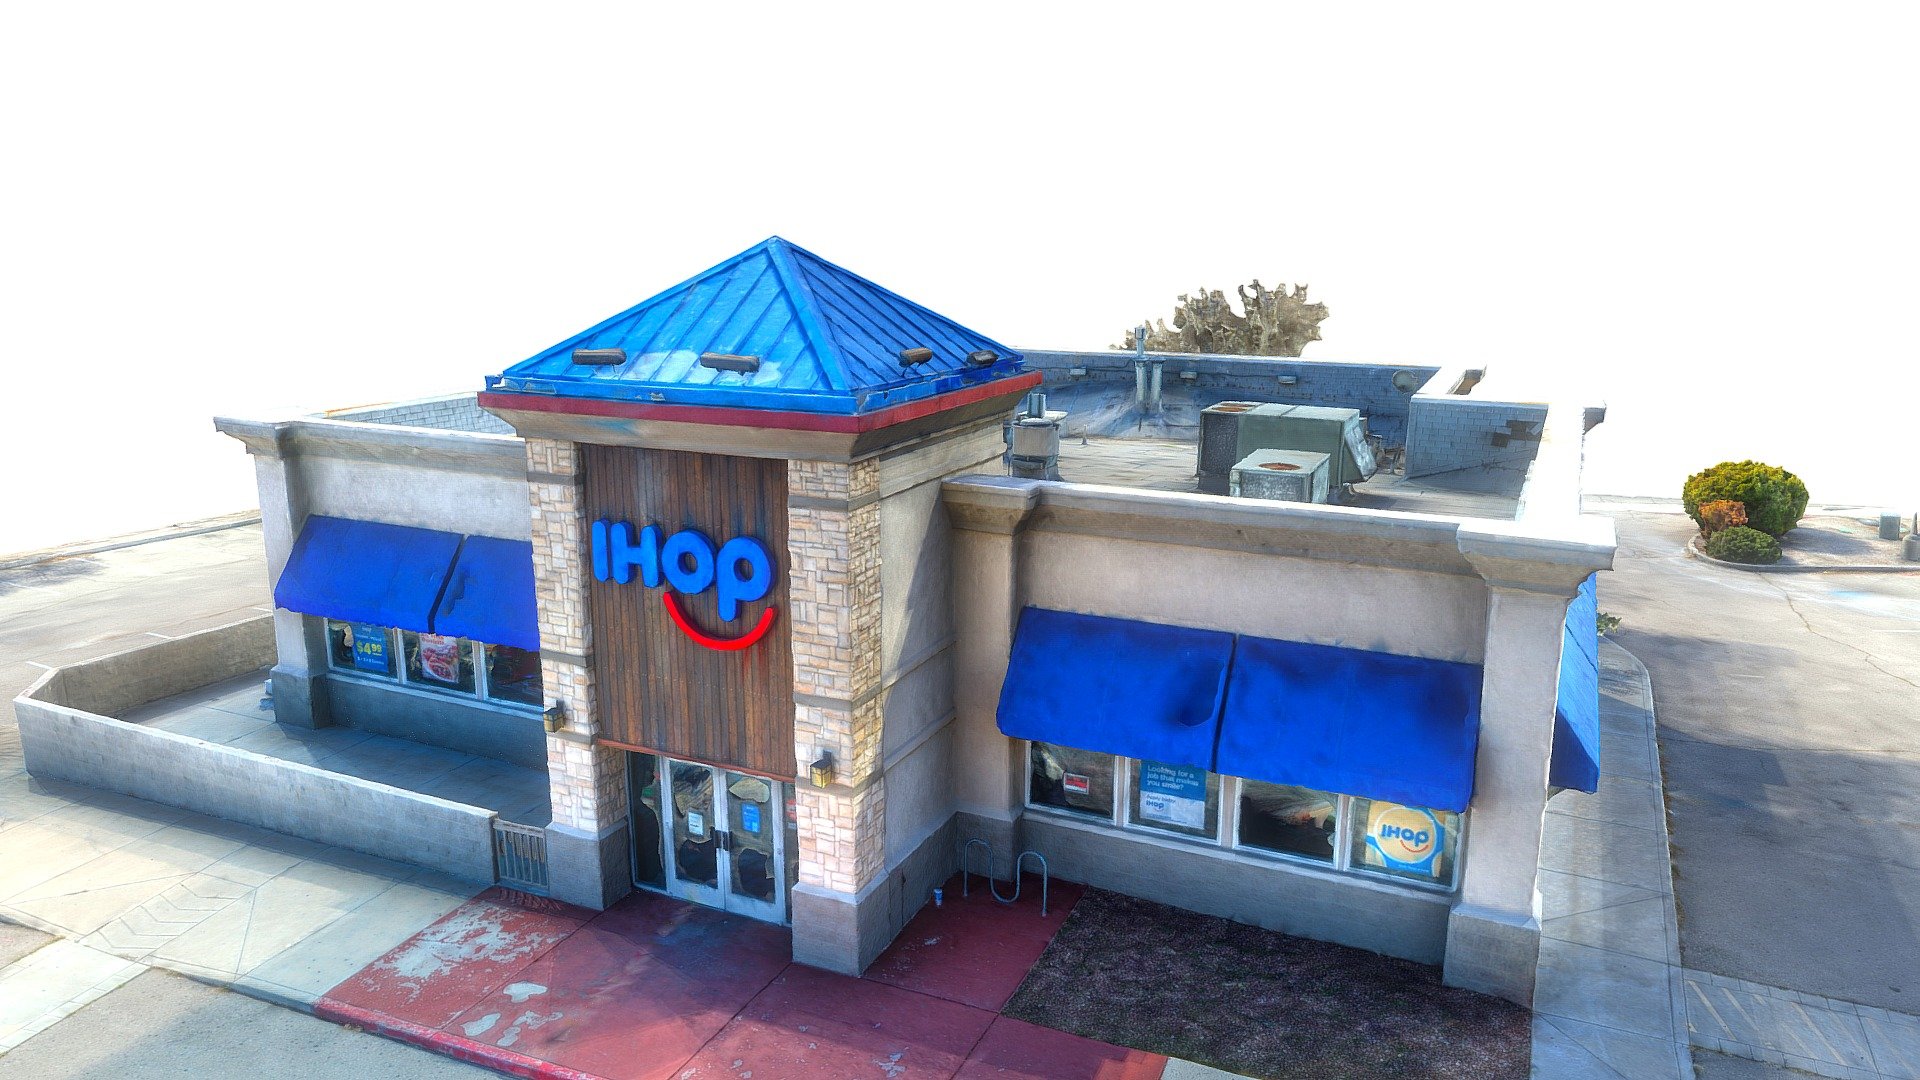 Featured image for “IHOP Restaurant, Albuquerque”